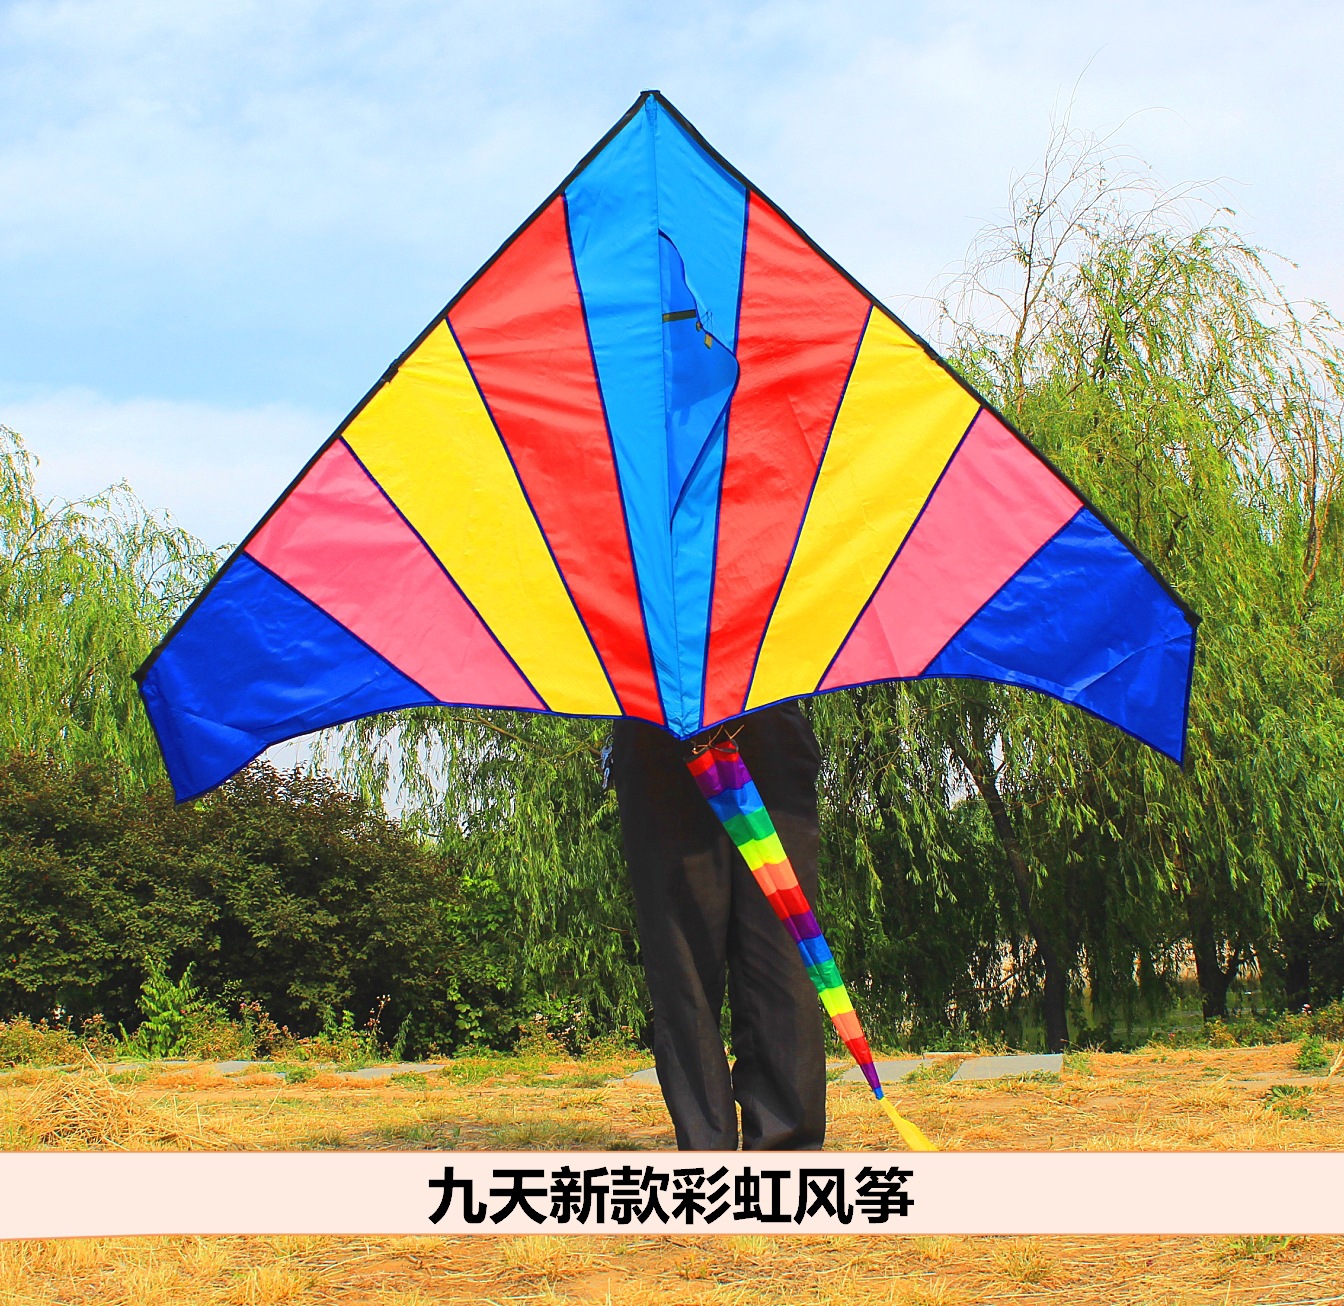 文化｜中国风筝的传说故事你知道多少呢？_人们